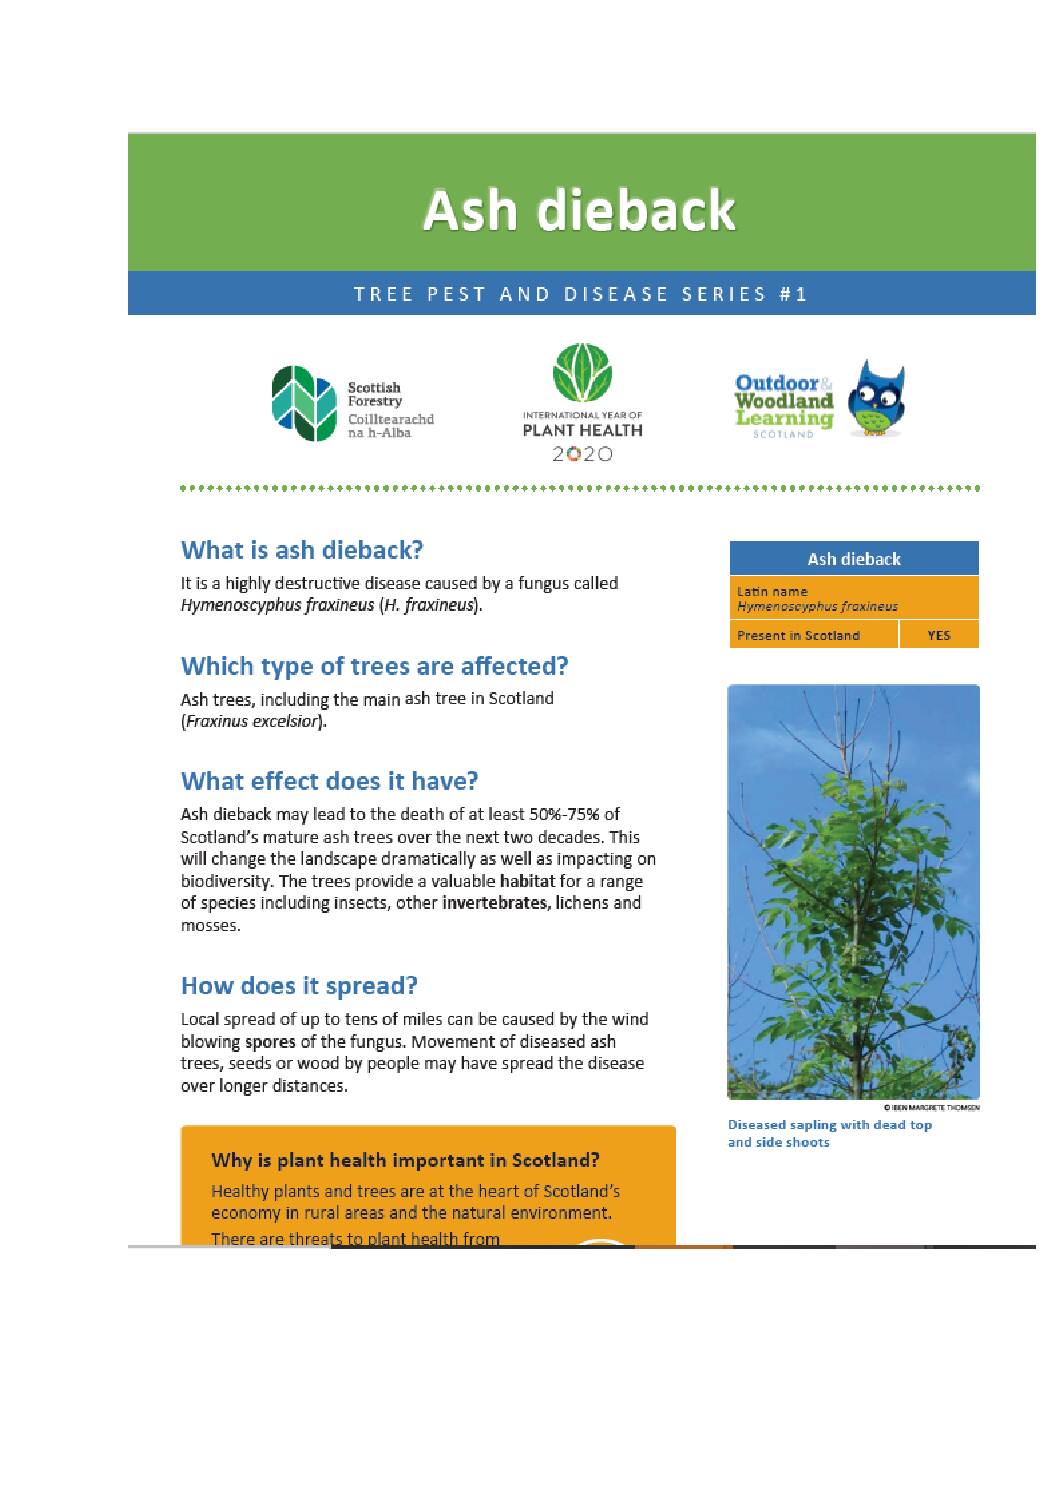 Ash Dieback- Tree pest and Disease Series